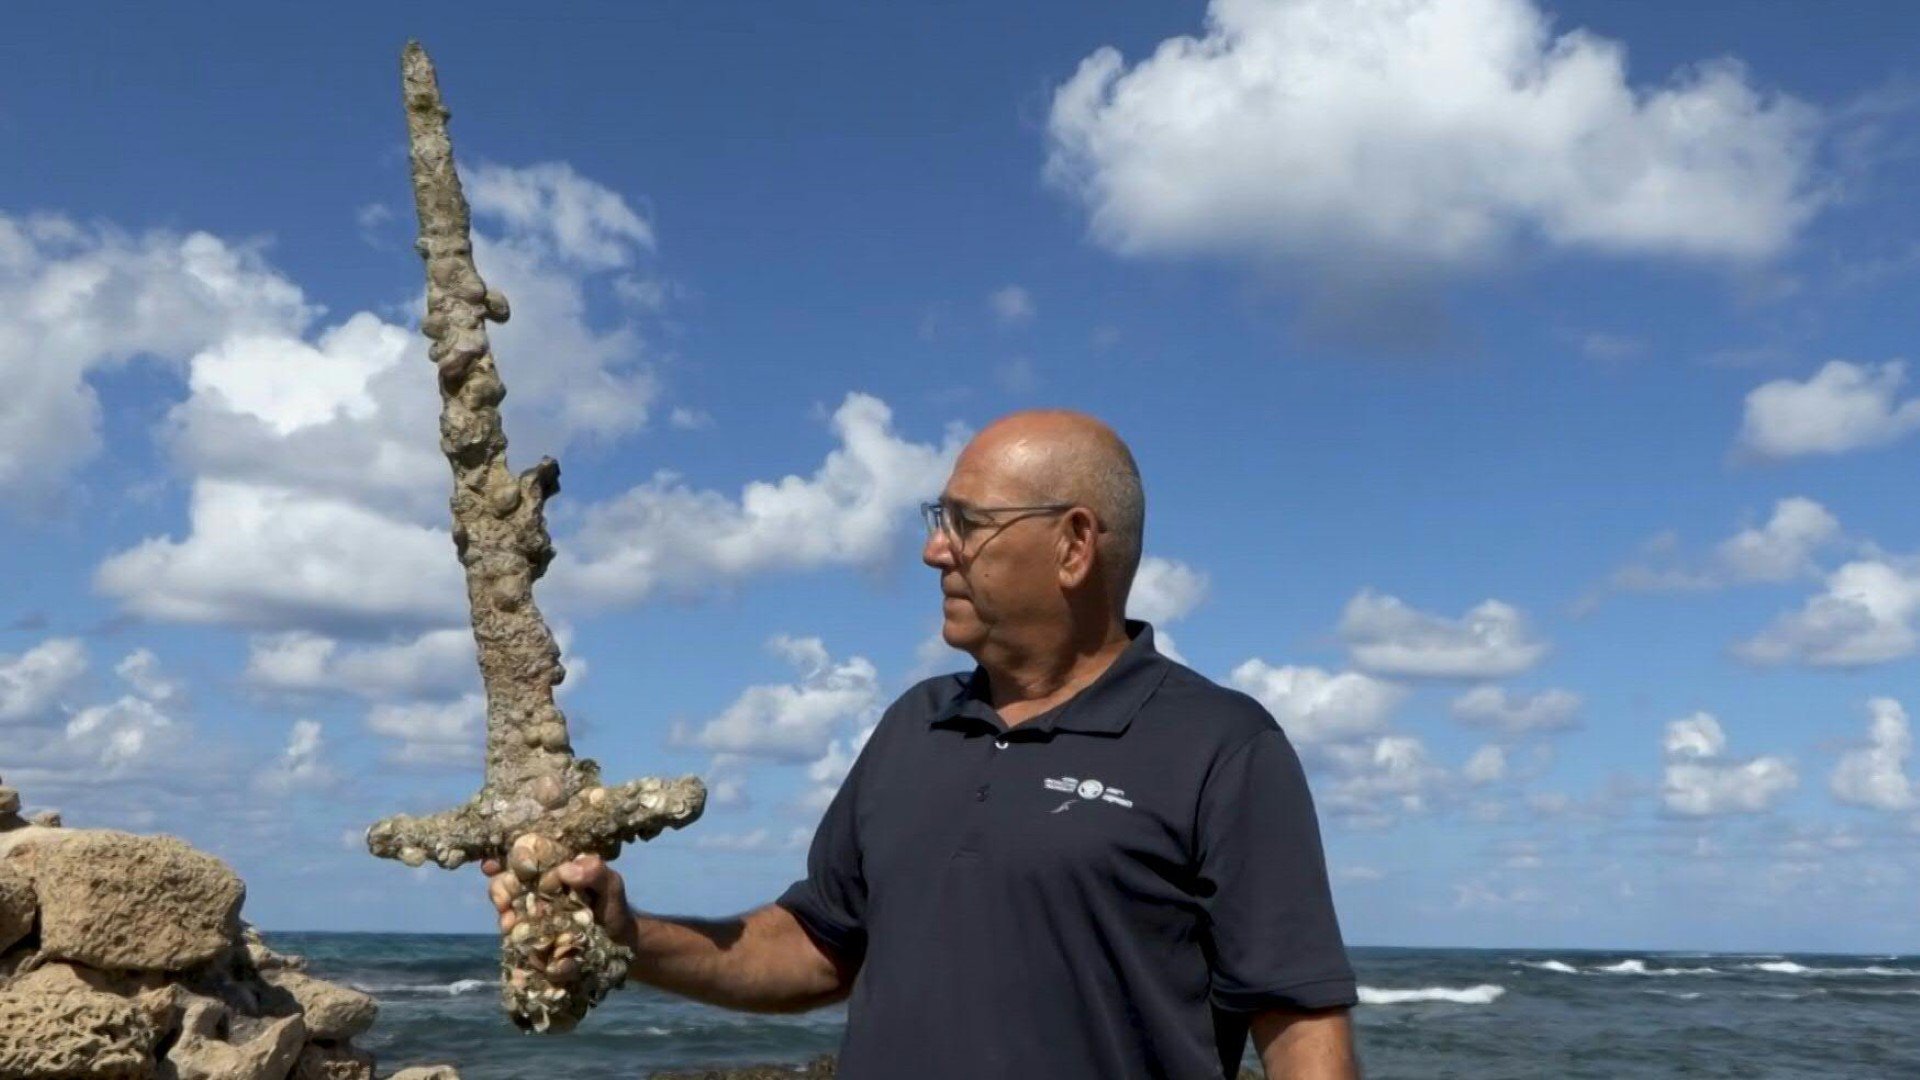 asomadetodosafetos.com - Mergulhador encontra espada de 900 anos no Mar Mediterrâneo; veja fotos